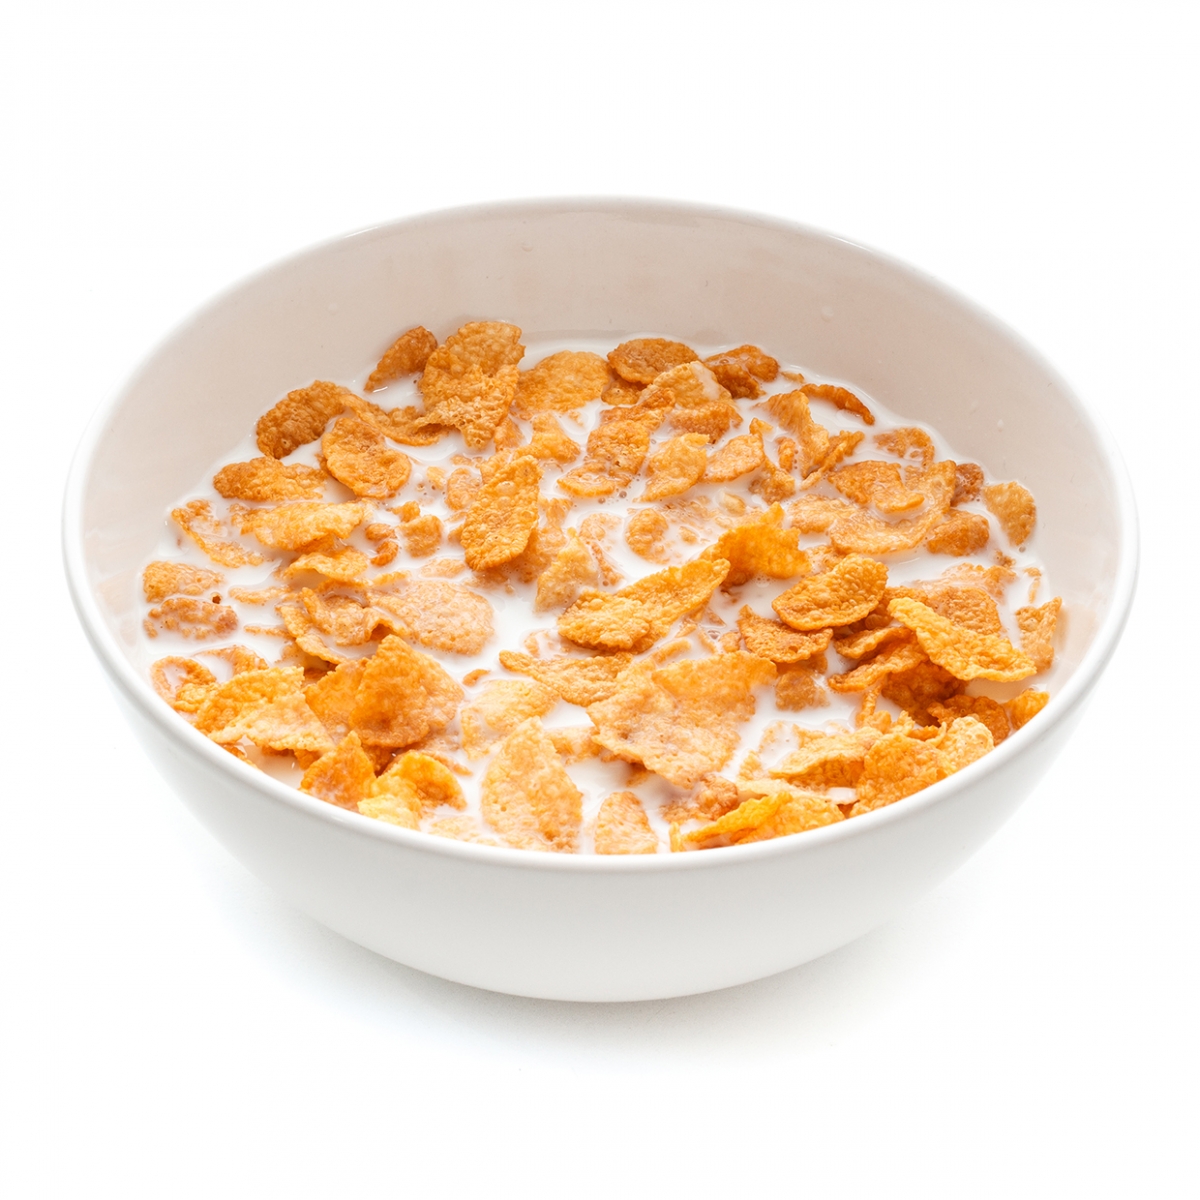 Imagen en la que se ve un bol lleno de cereales con leche